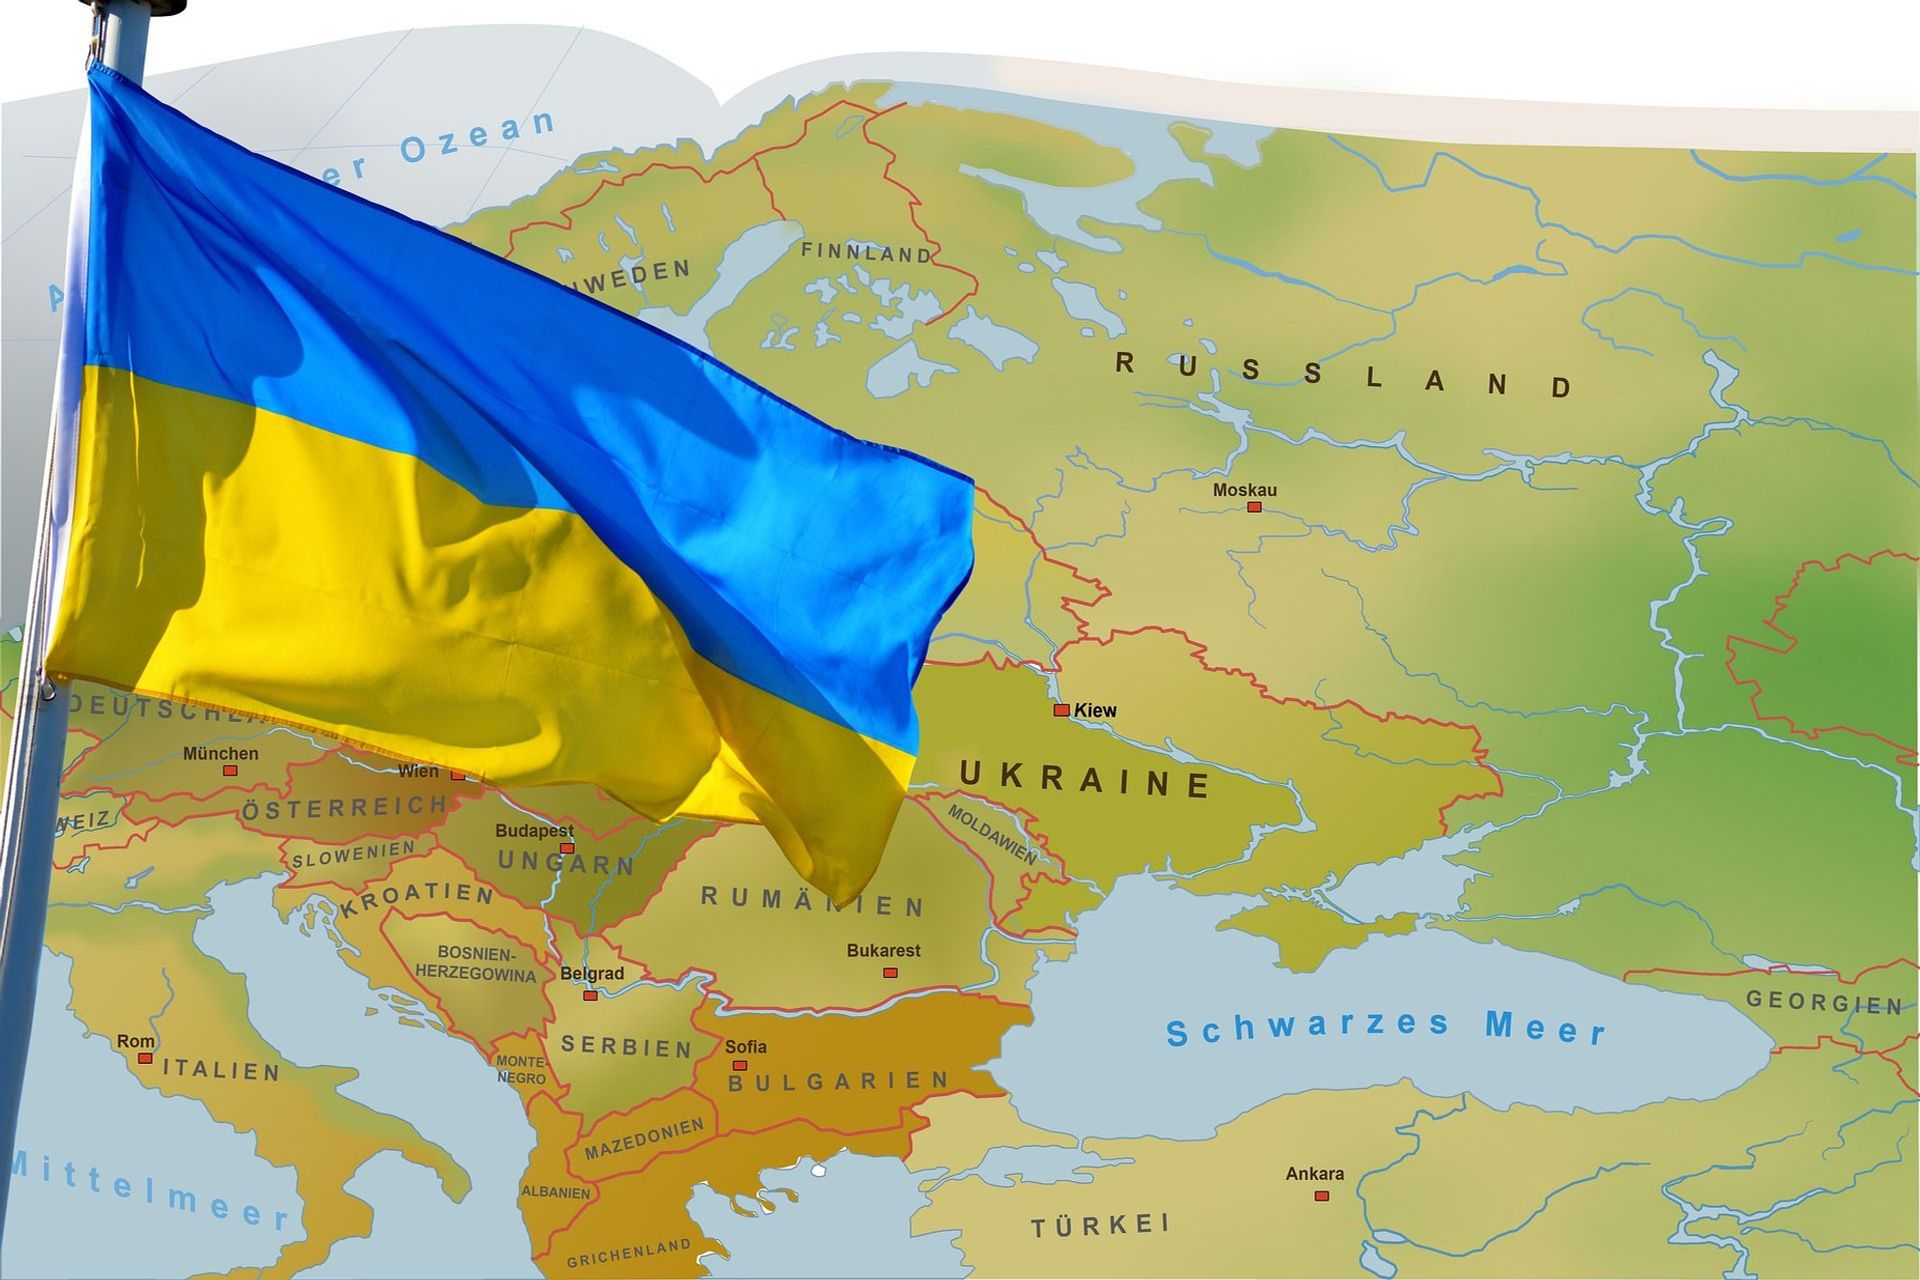 L'Ucraina, dalla celebre bandiera blu e gialla, è parte integrante della storia d'Europa